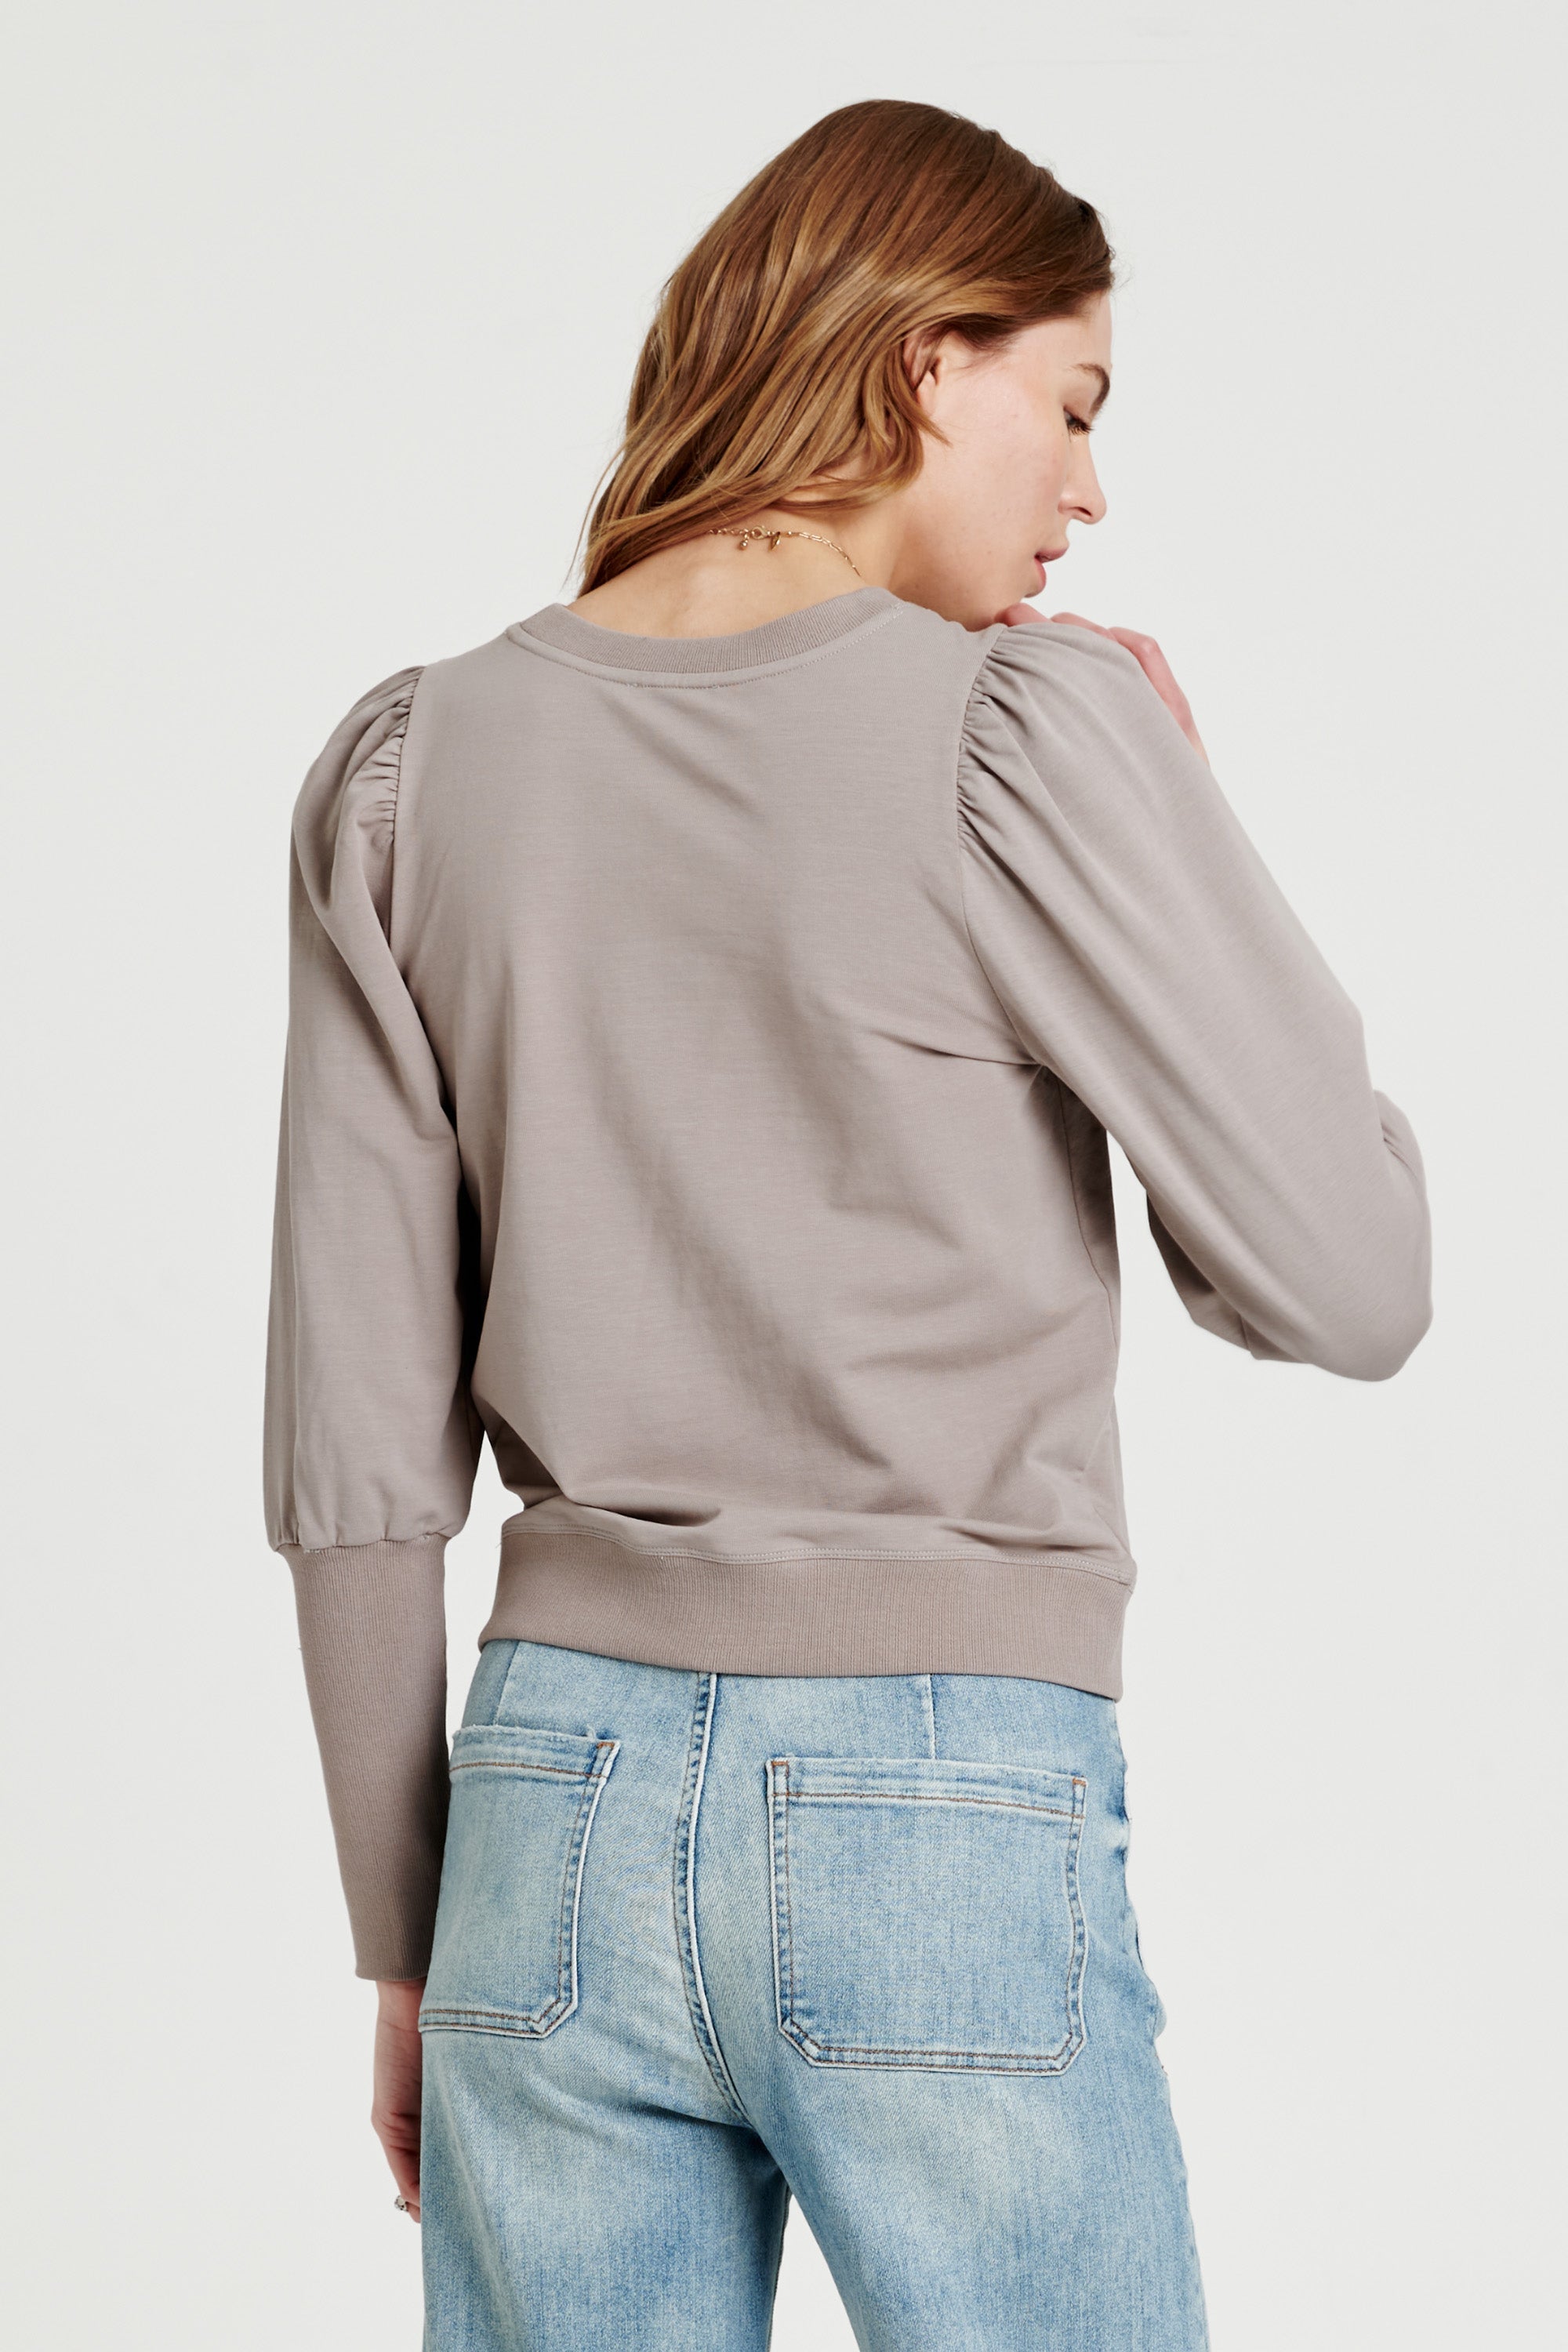 tara-puffy-long-sleeve-sweatshirt-granite